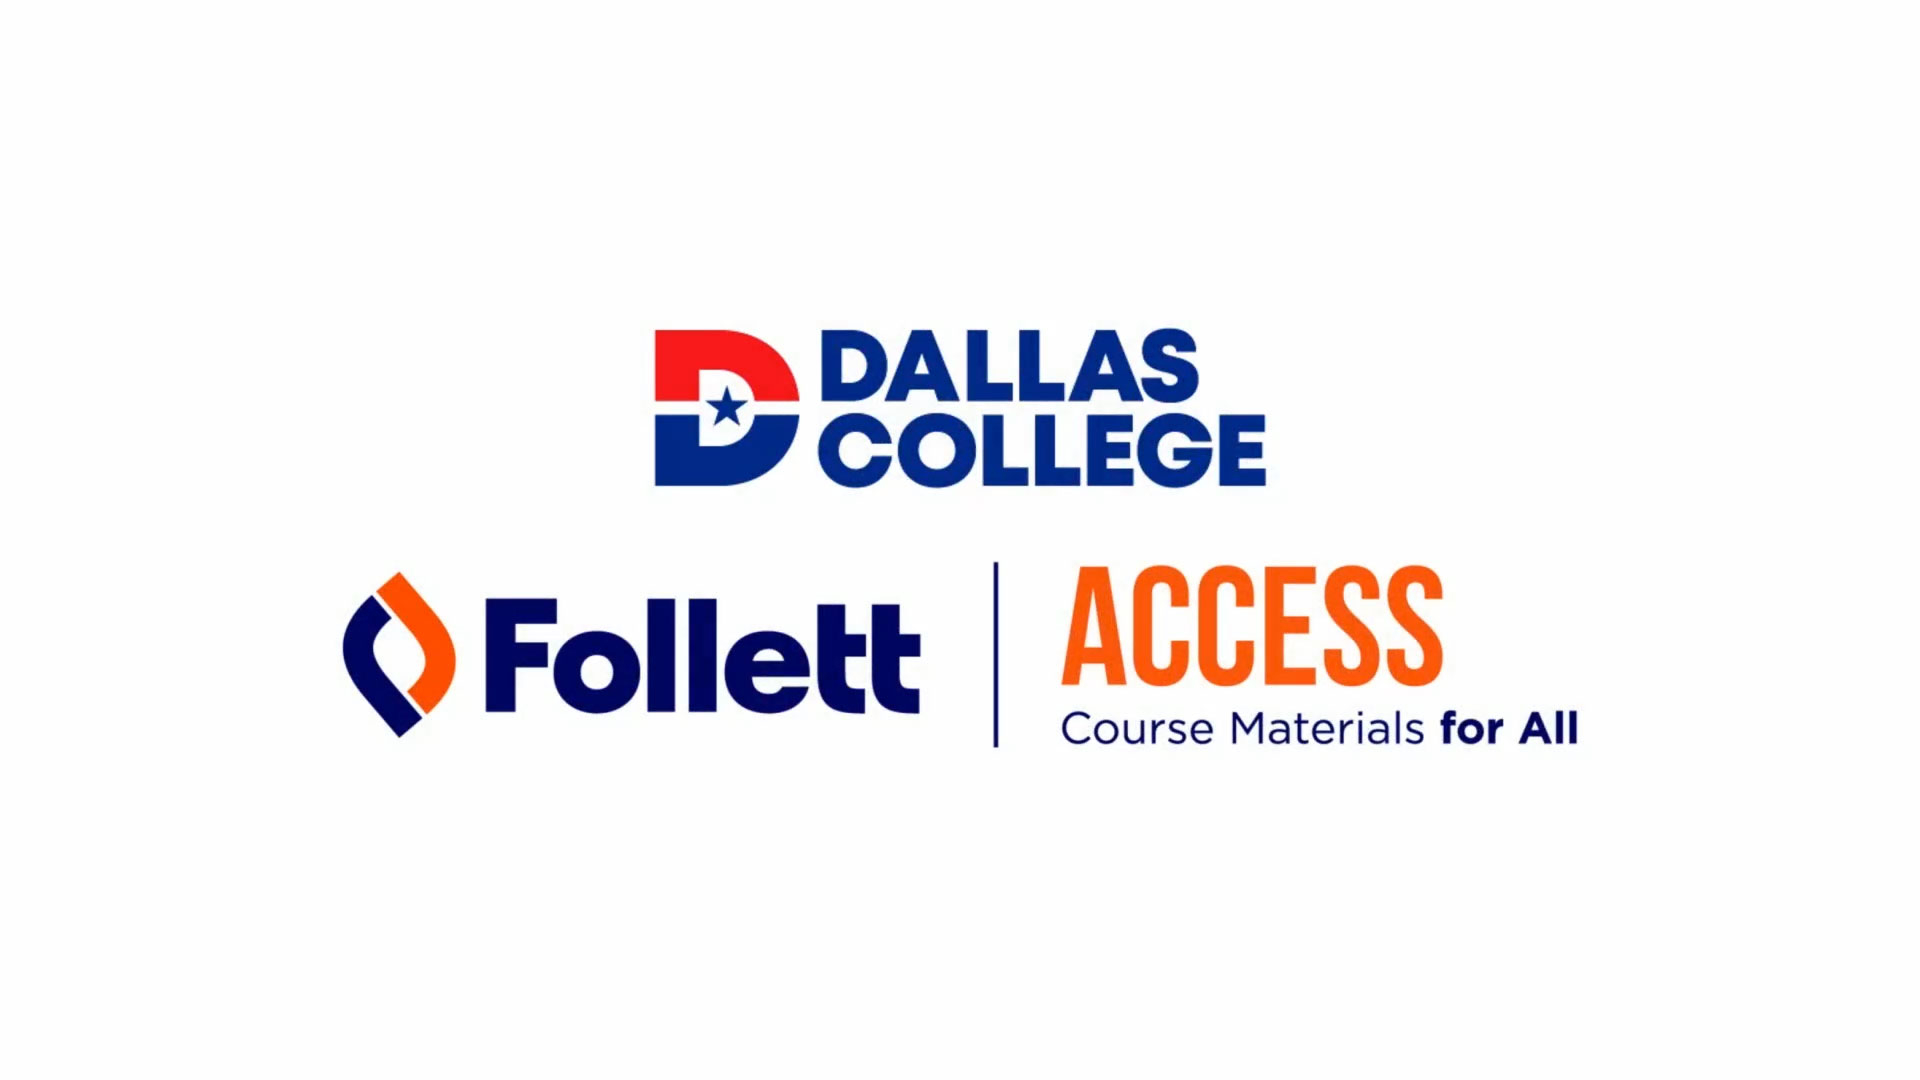 Follett ACCESS program at Dallas College.